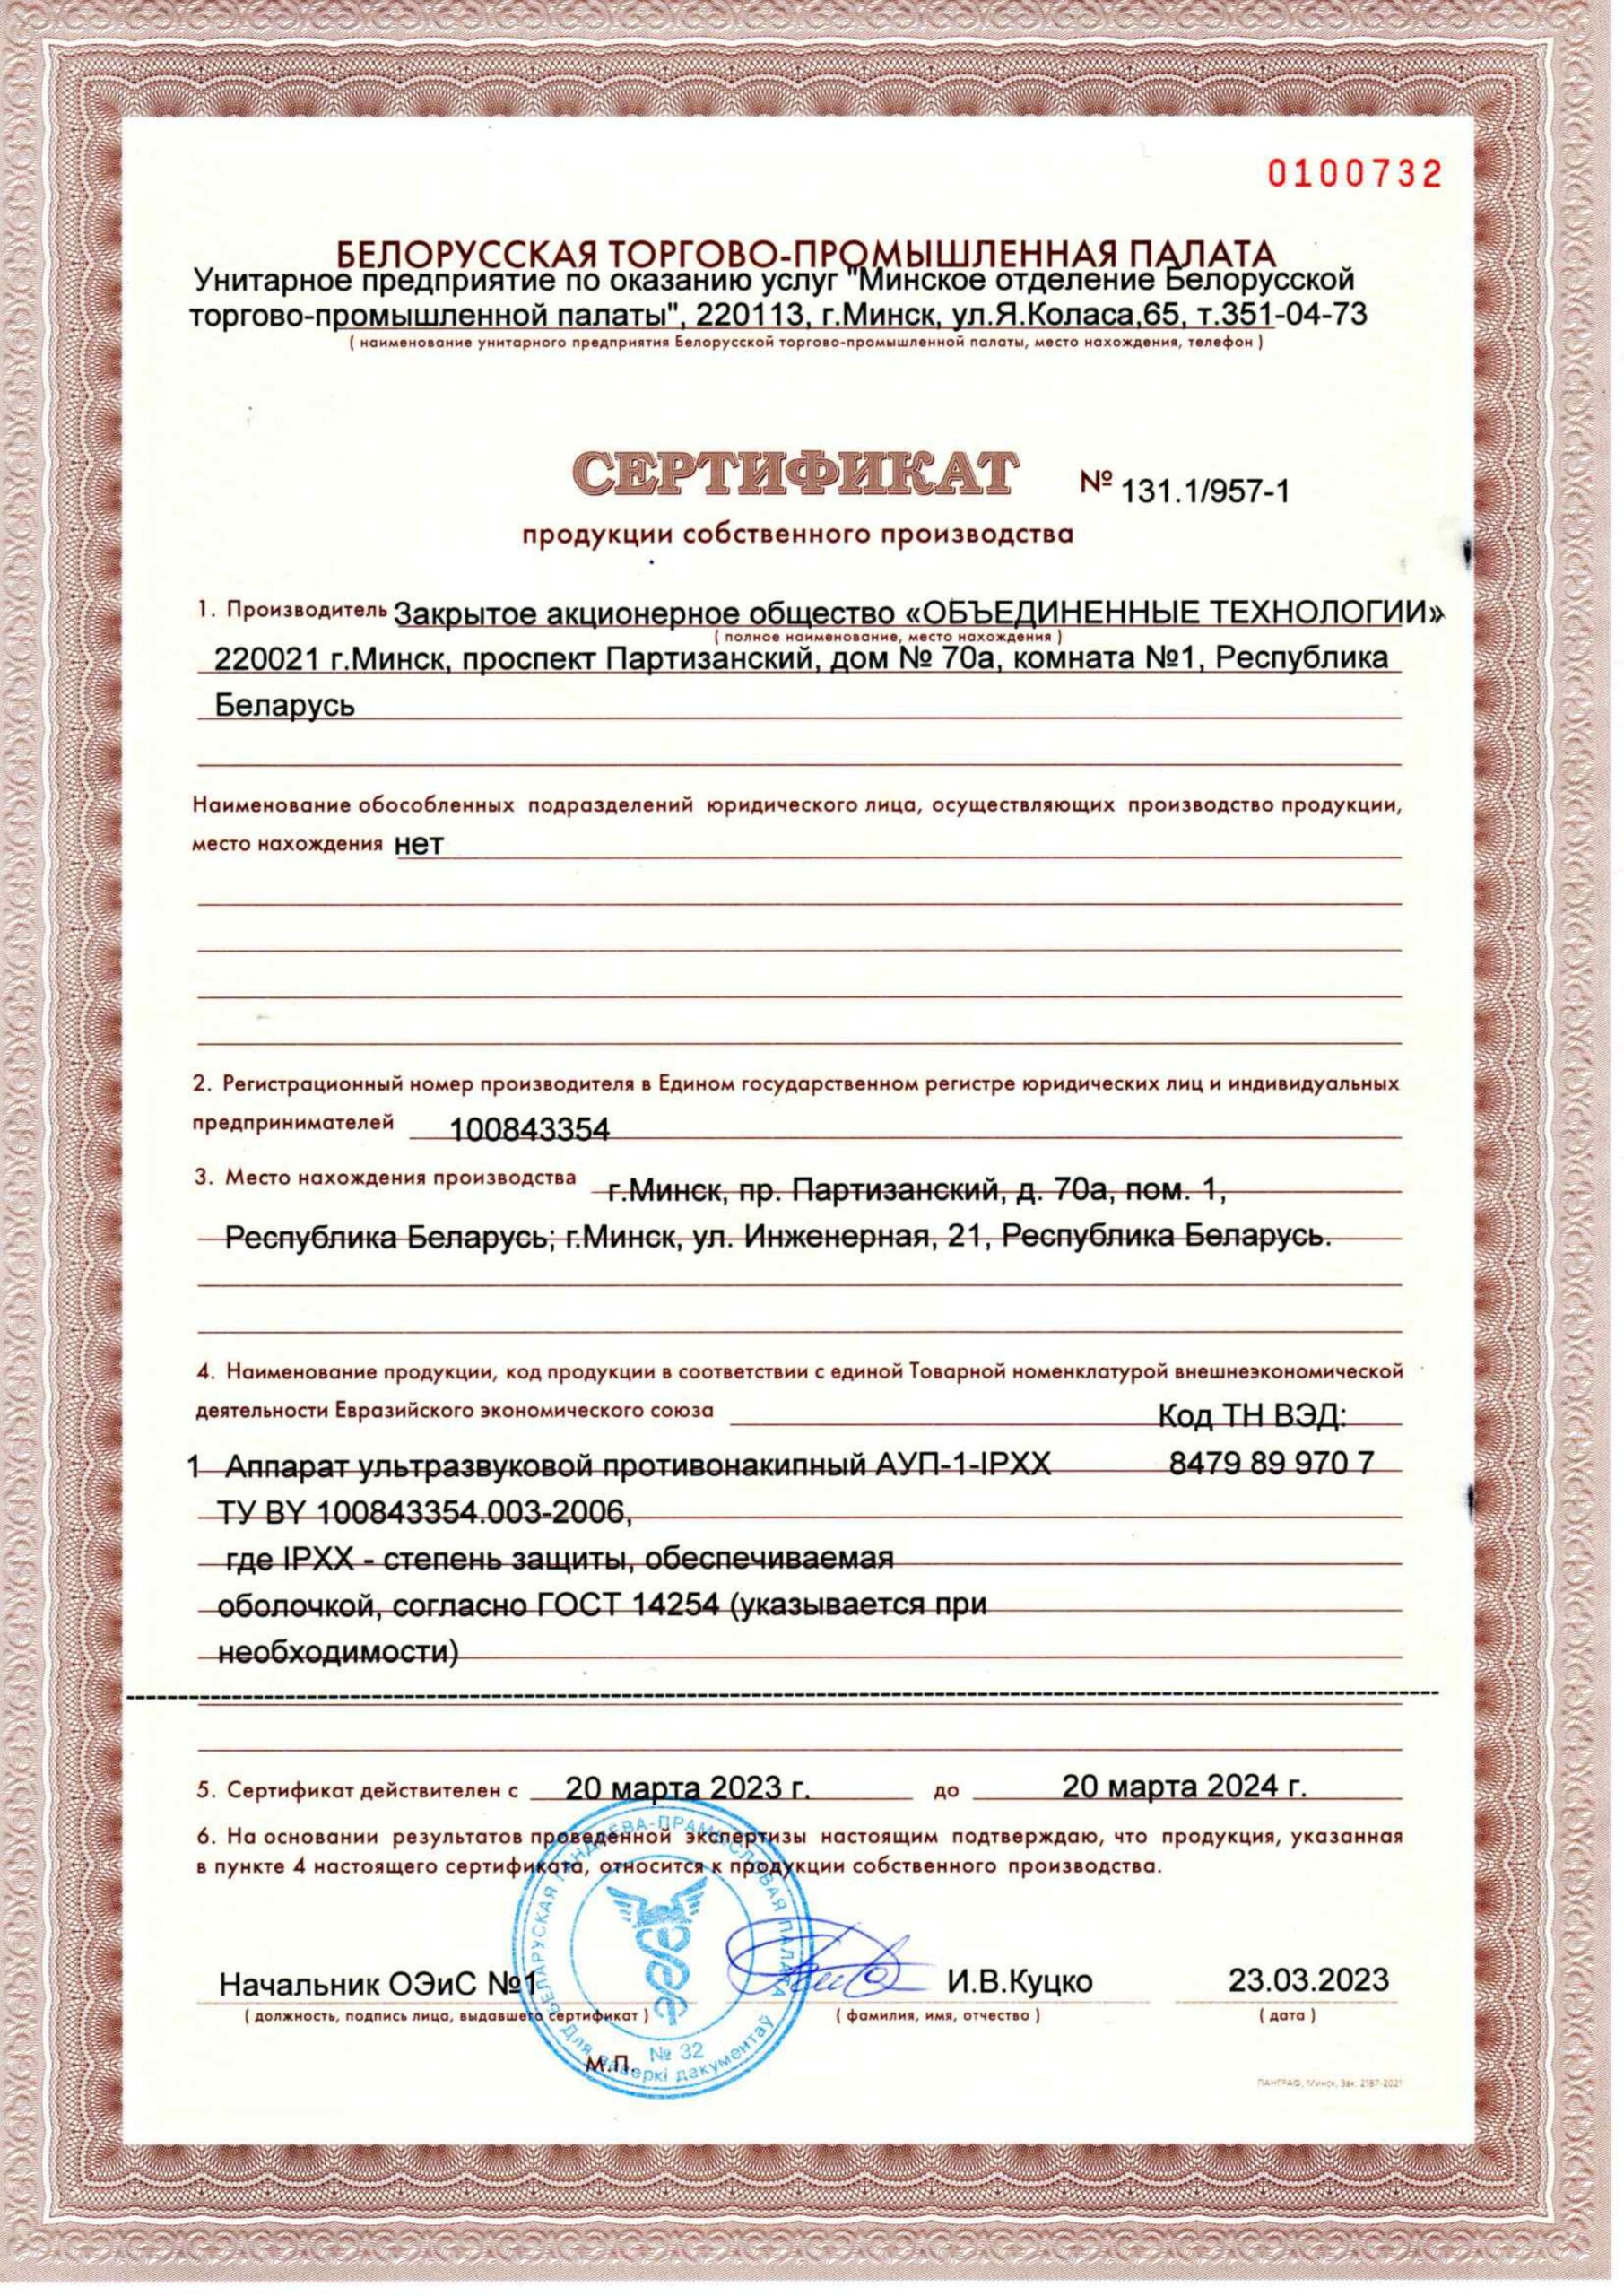 Сертификат продукции собственного производства АУП 2023 г.